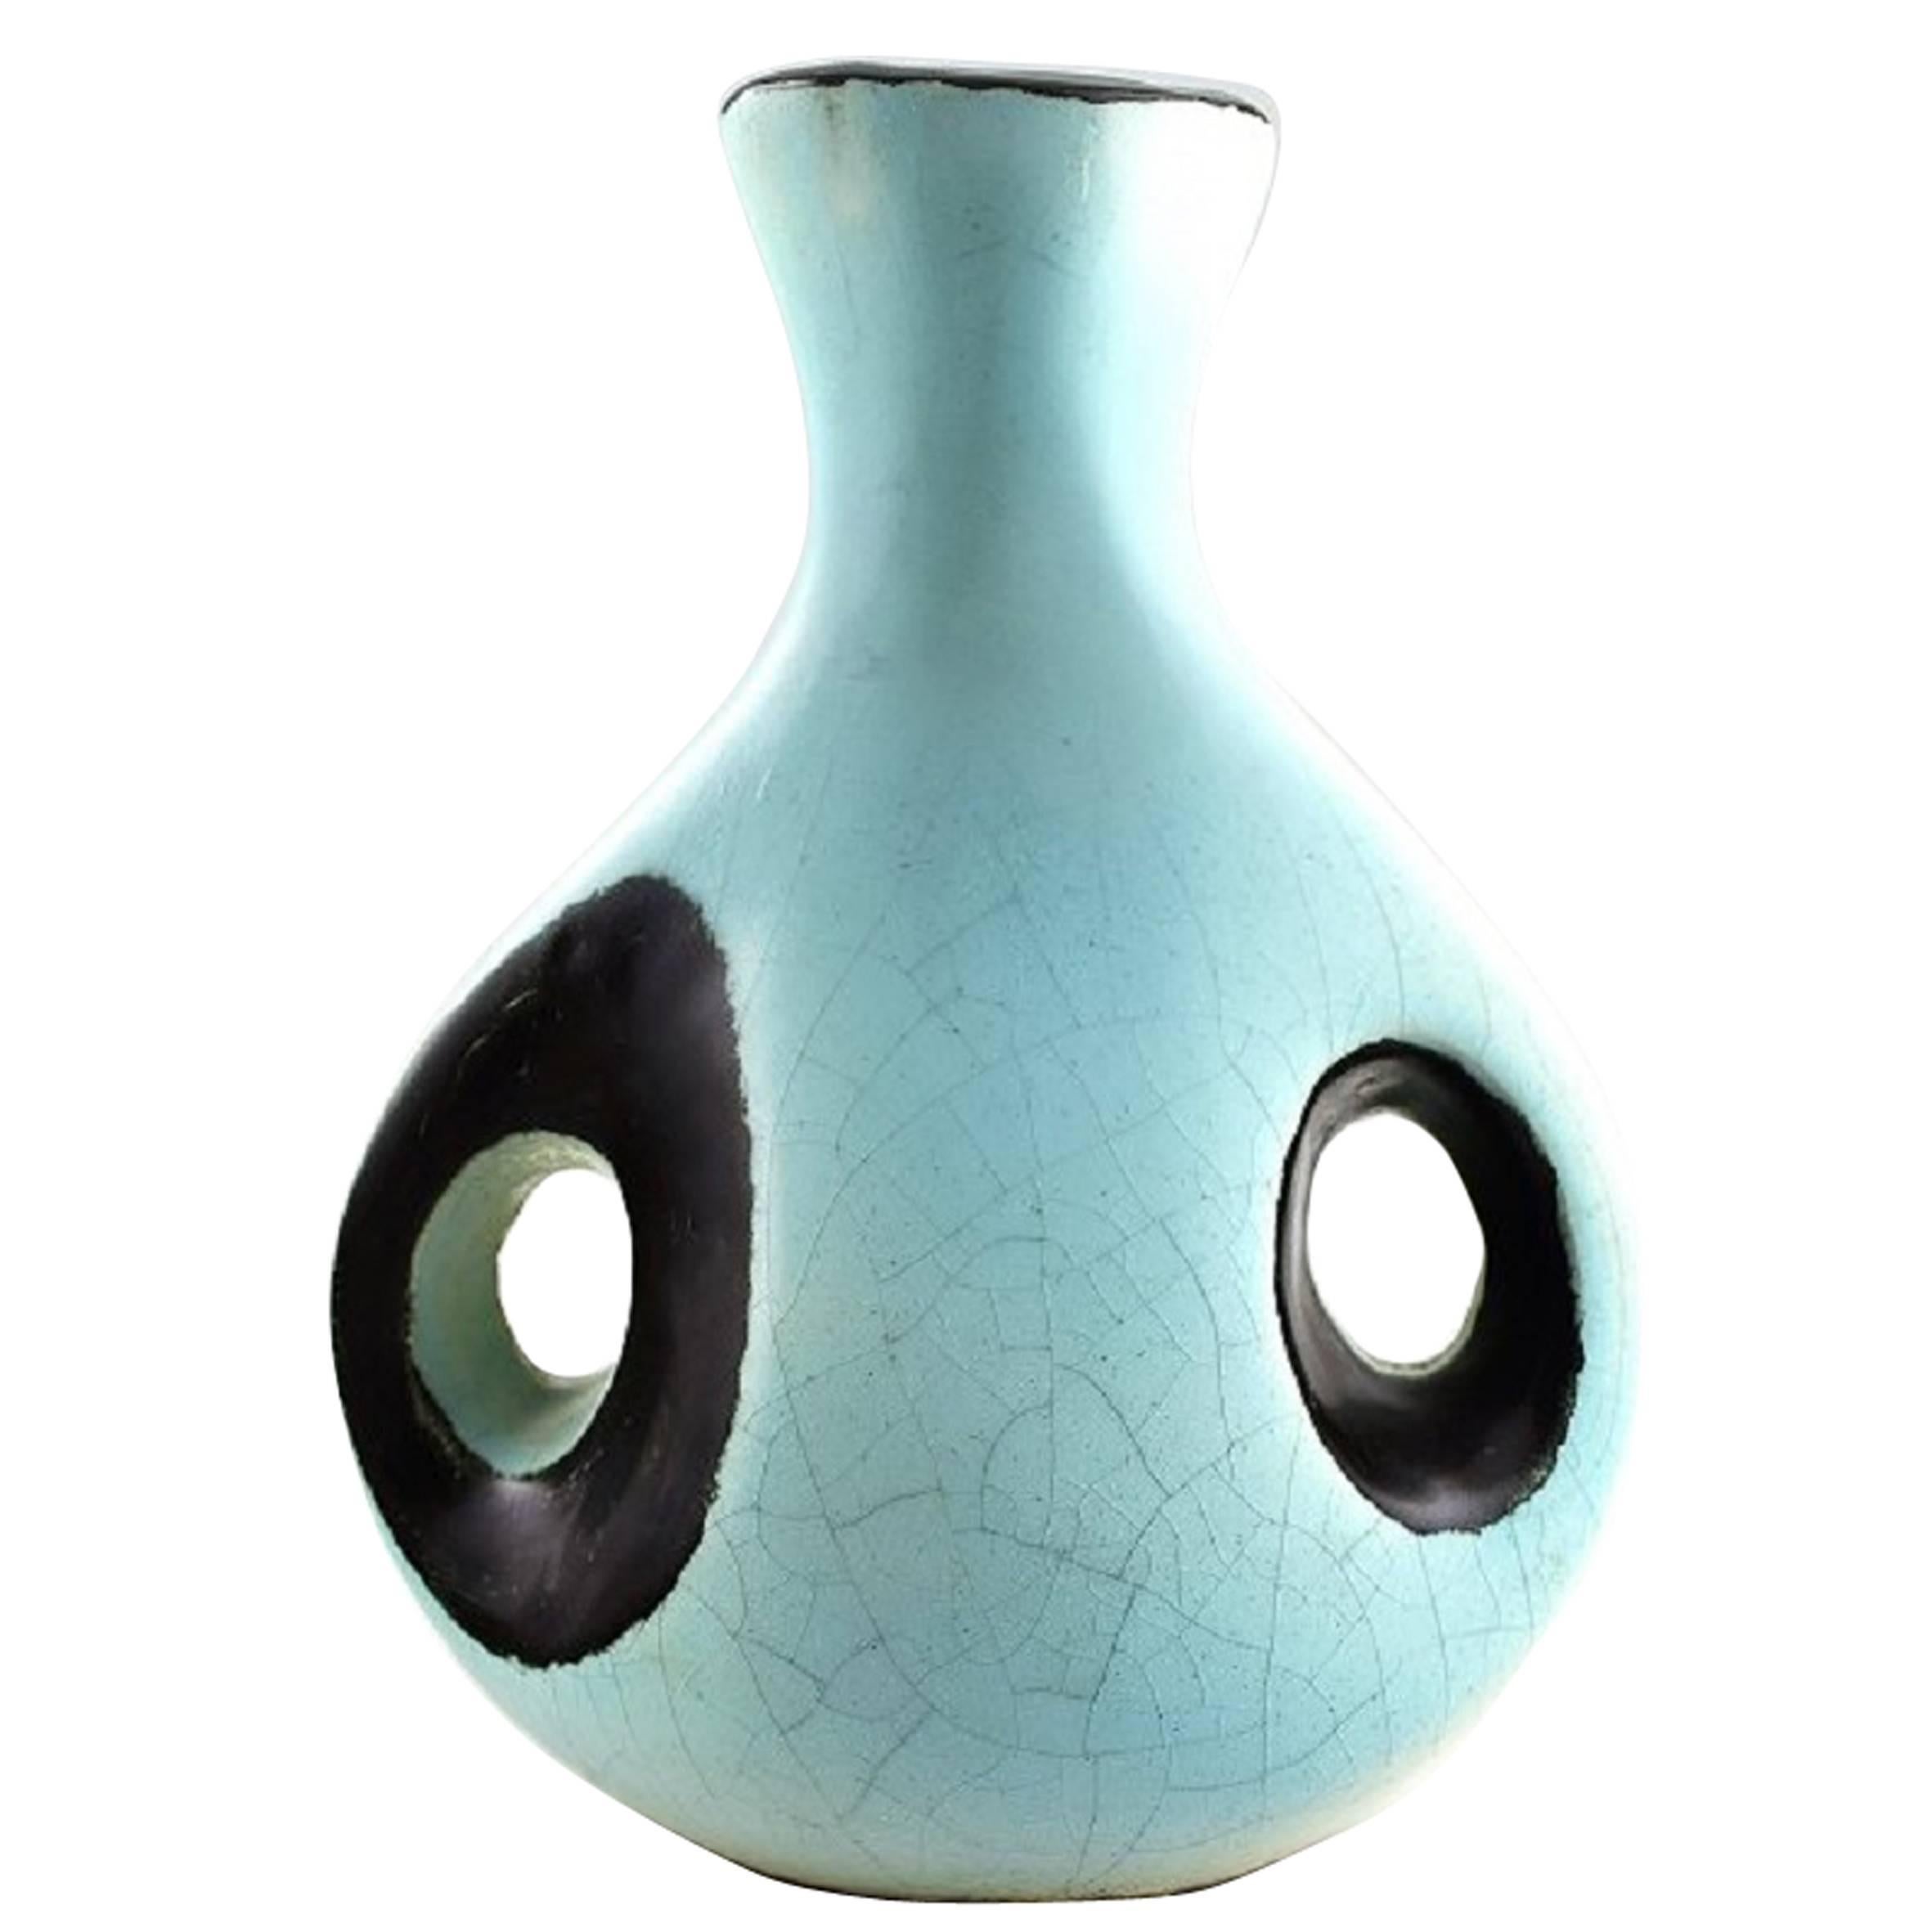 Hans Hedberg Swedish Ceramist, Unique Ceramic Vase, circa 1960s